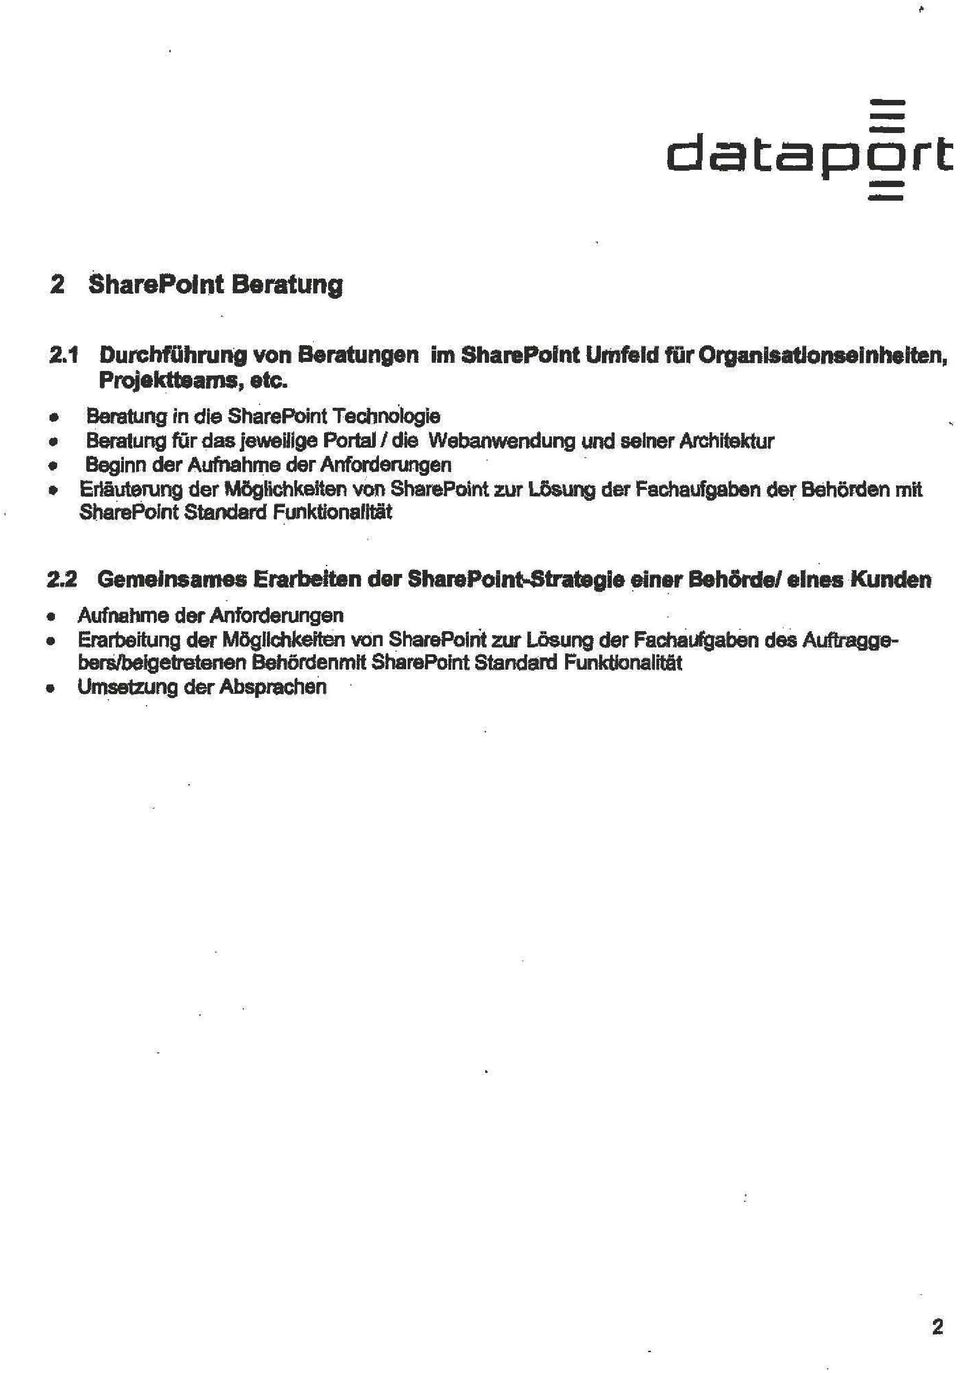 Möglichkeiten v0n SharePoint zur Lö&ung der Fachaufgaben der Behörden mit SharePoint Standard FunktionalHät 2.